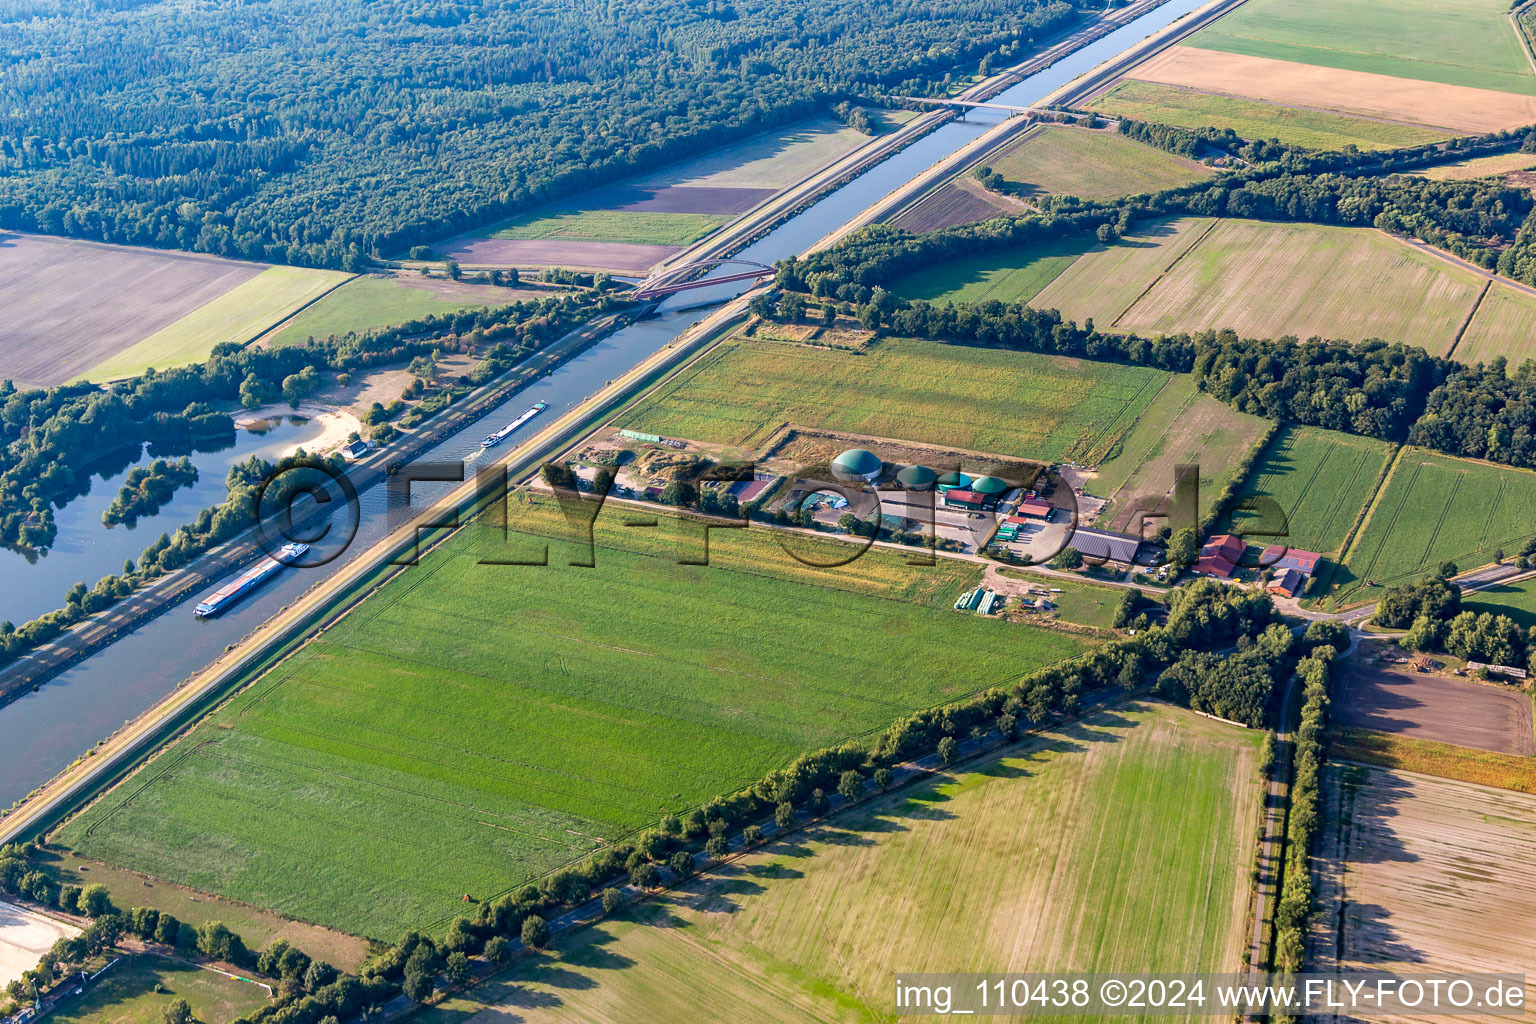 Vue aérienne de Biogas GmbH près du pont ferroviaire sur le canal latéral à l'Elbe à Scharnebeck dans le département Basse-Saxe, Allemagne